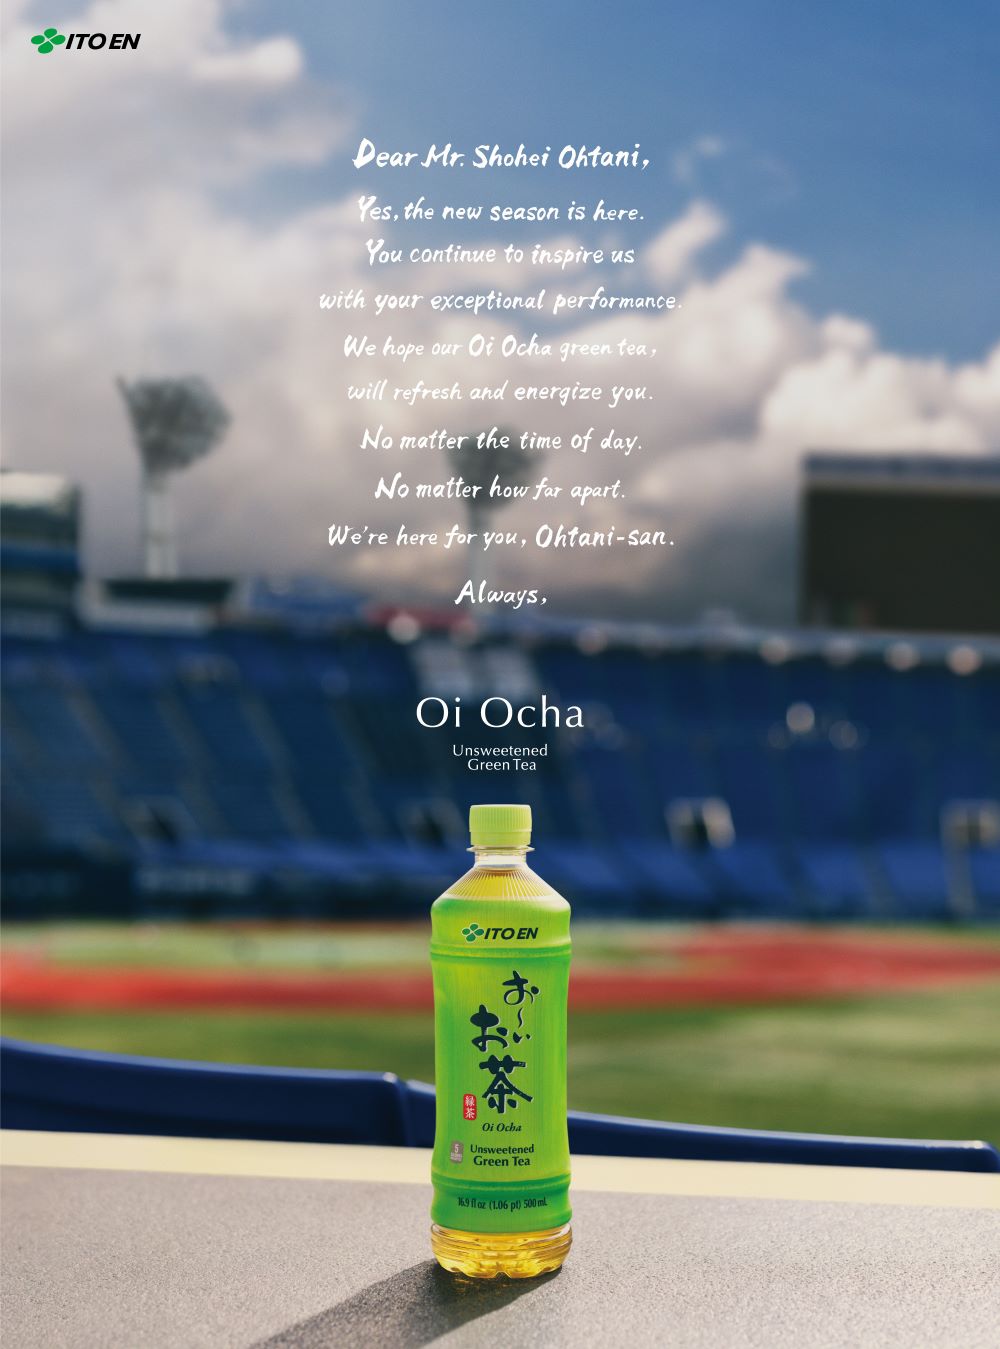 ภาษาอังกฤษ - Shohei Ohtani Signs Global Partnership with ITO EN's Green Tea Brand "Oi Ocha"